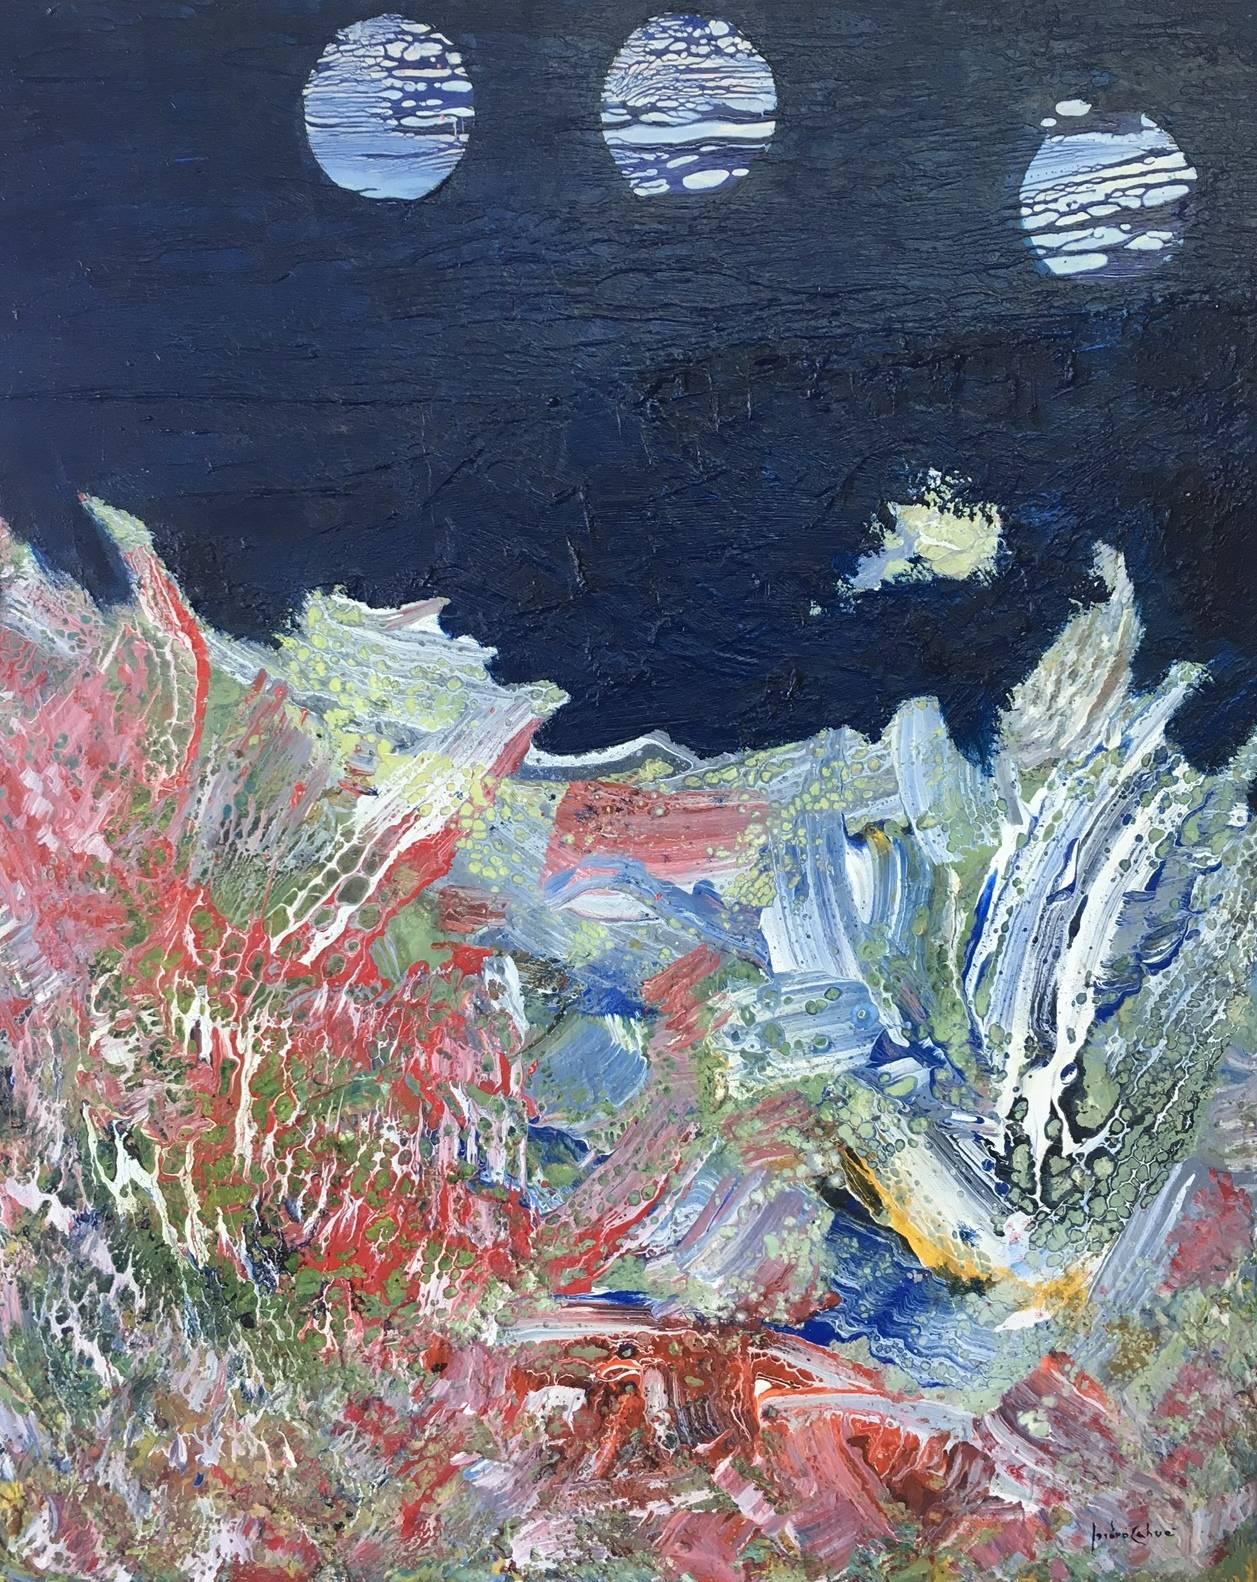  I. Cahue- La mer et la lune. Peinture abstraite originale sur toile acrylique. - Abstrait Painting par Isidro Cahue